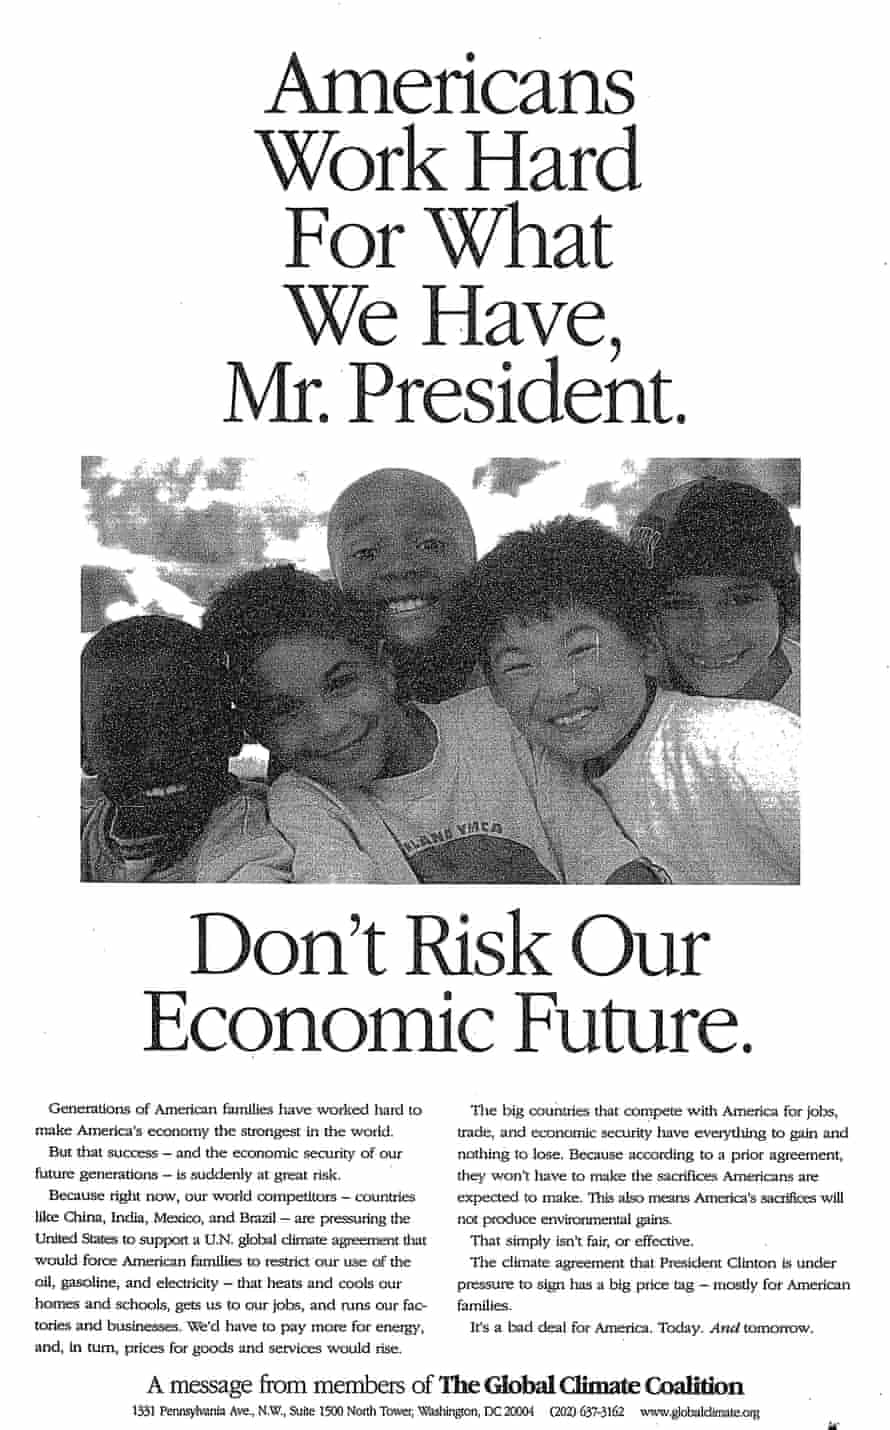 지구 기후 동맹, 1997 선언: "미국인들은 우리가 가진 것을 위해 열심히 일합니다, 대통령님.  우리의 경제적 미래를 위험에 빠뜨리지 마십시오."